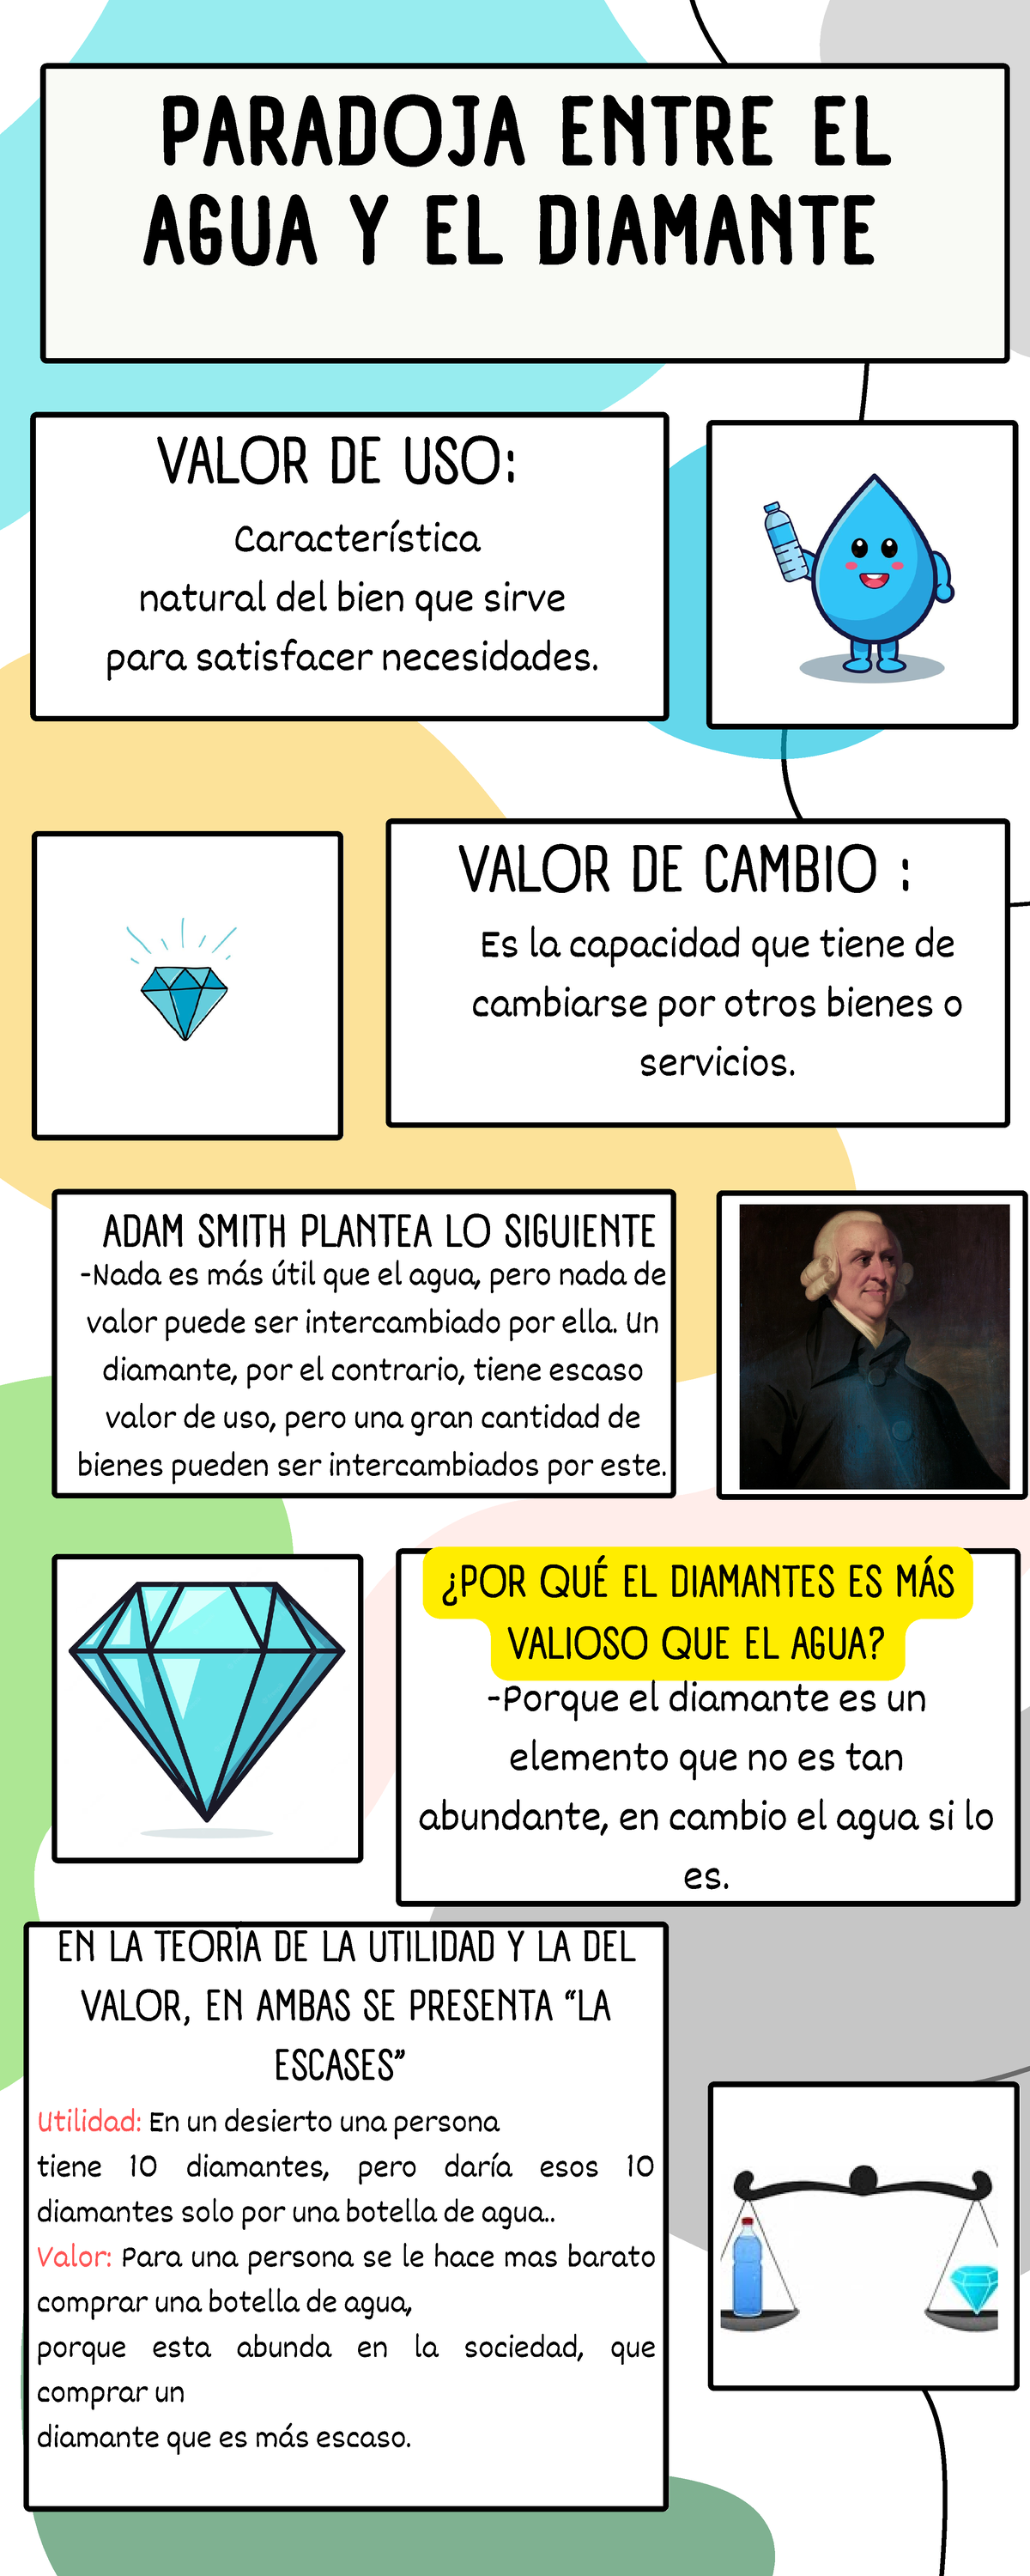 Infografia Paradoja Entre Agua Y El Diamante 1 Paradoja Entre Elparadoja Entre El Agua Y El 9296